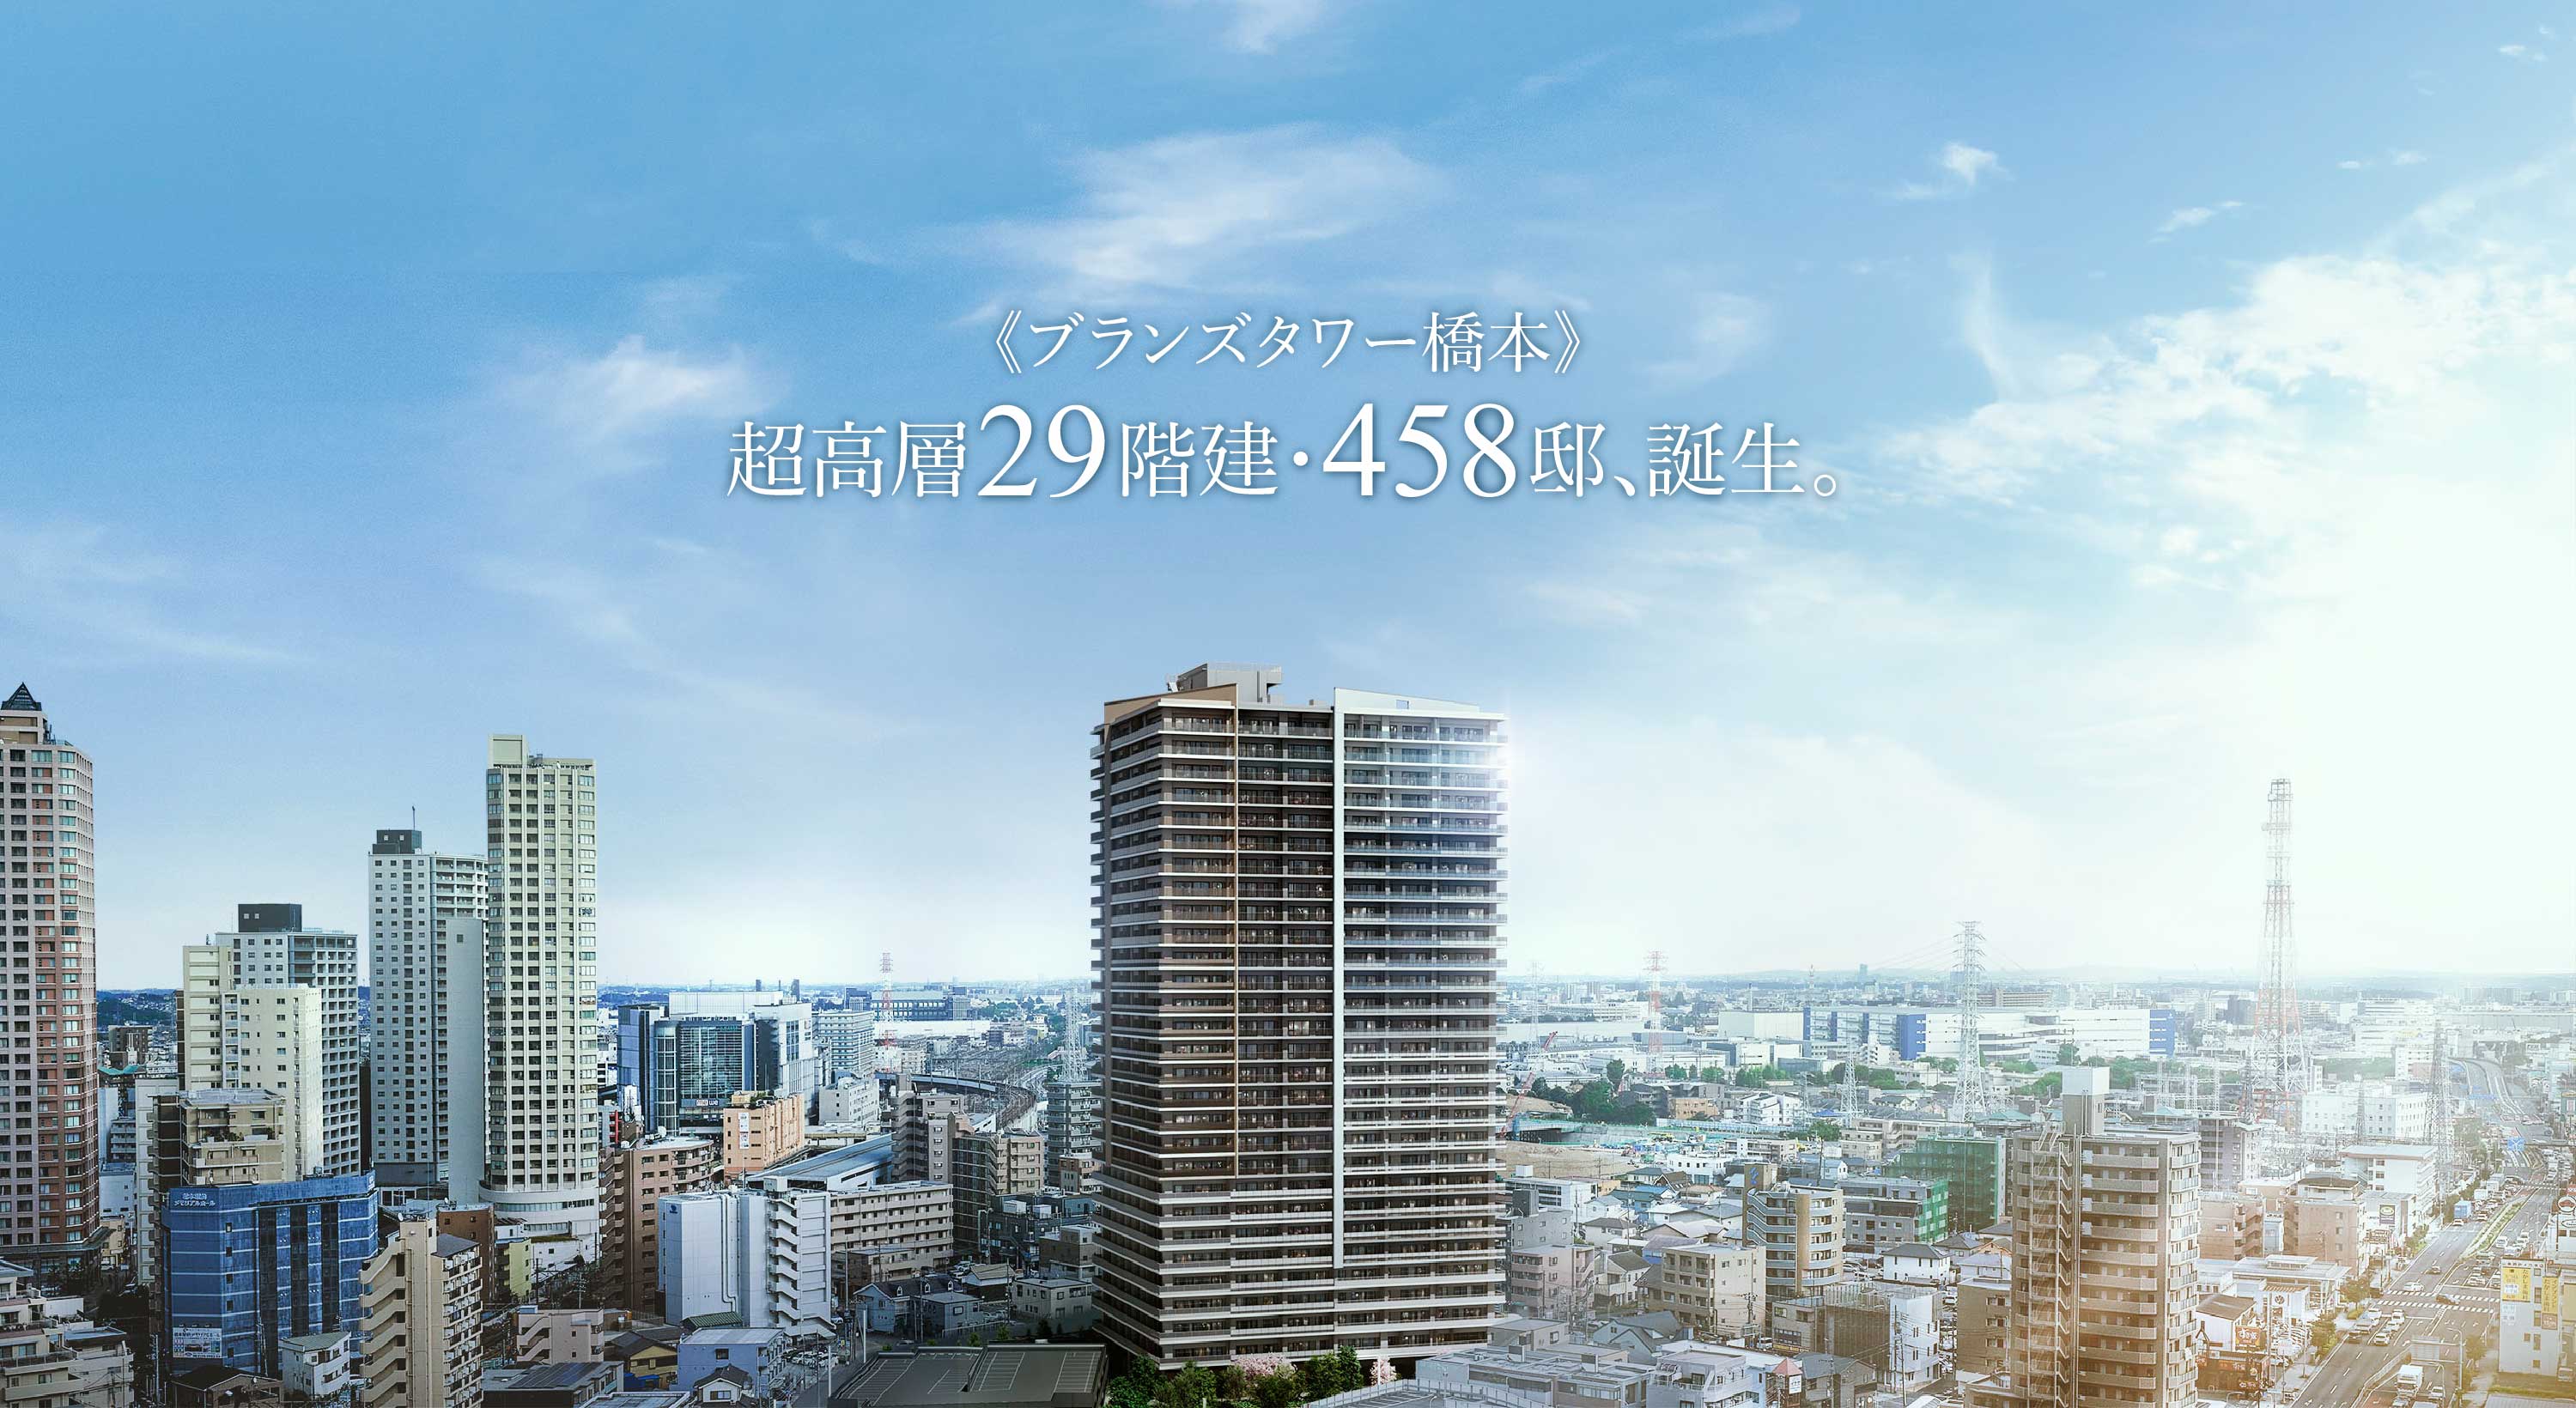 《ブランズタワー橋本》超高層29階建・458邸、誕生。